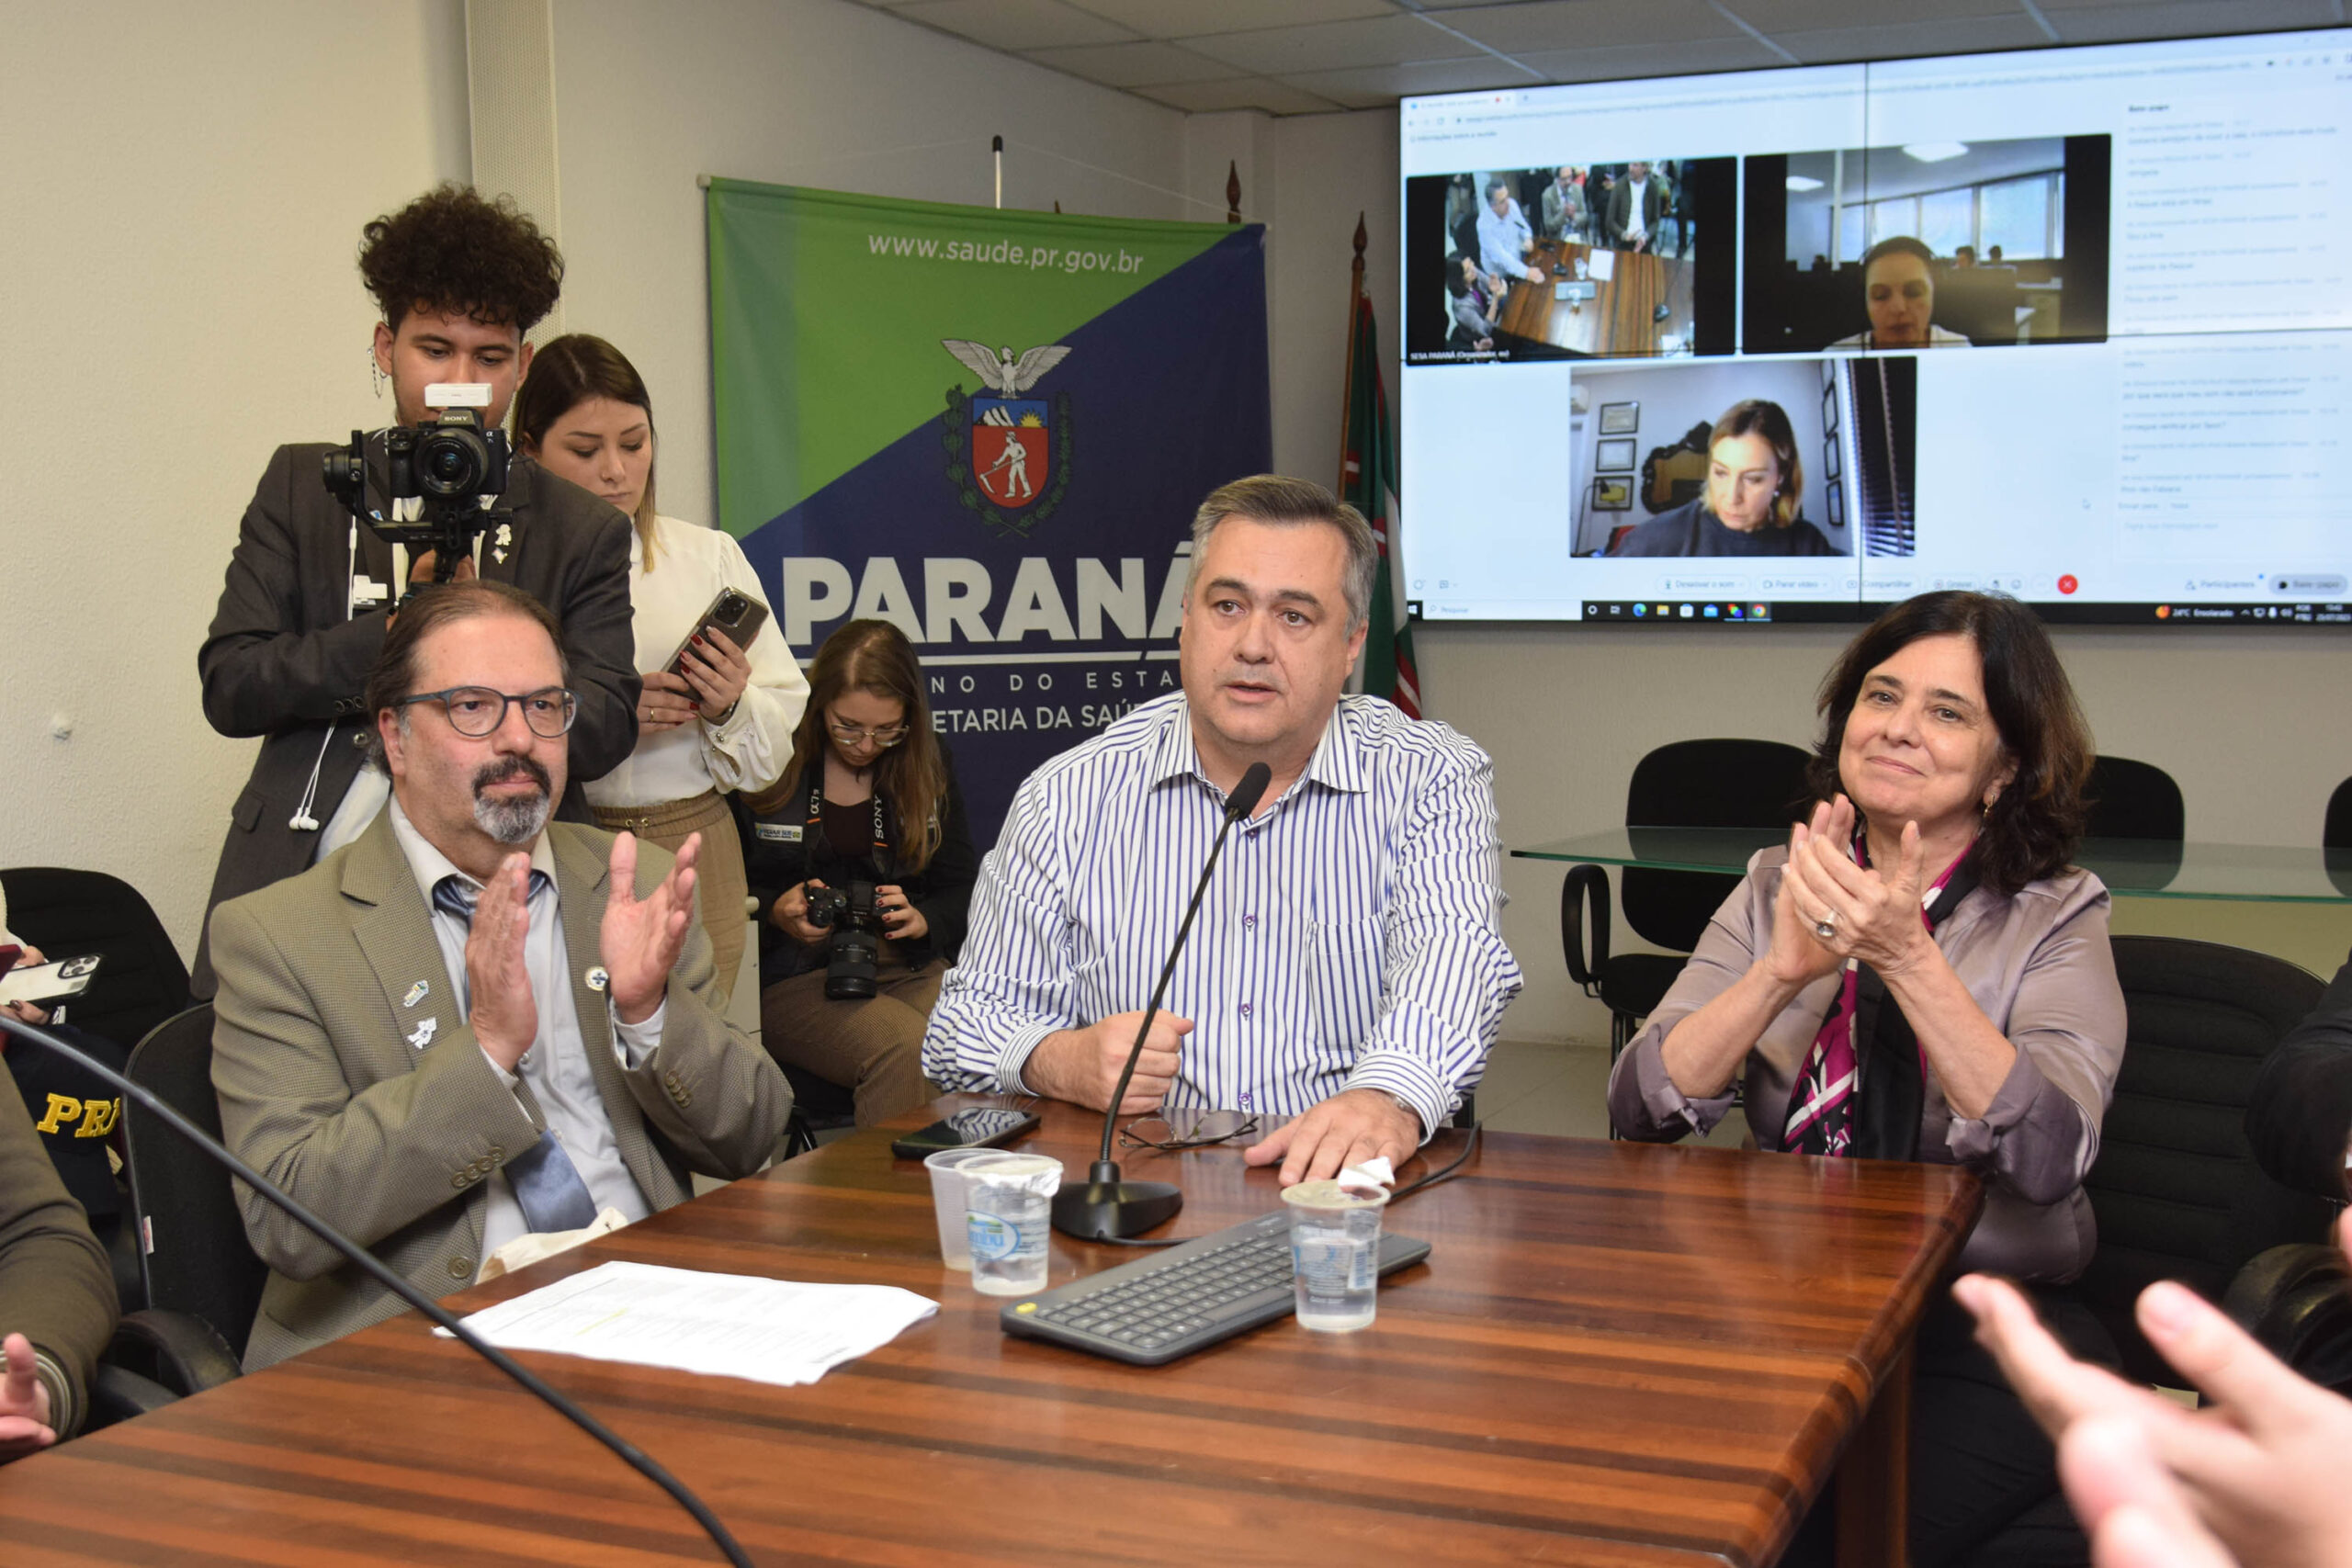 Em visita, ministra da Saúde destaca parceria com o Estado para o SUS no Paraná